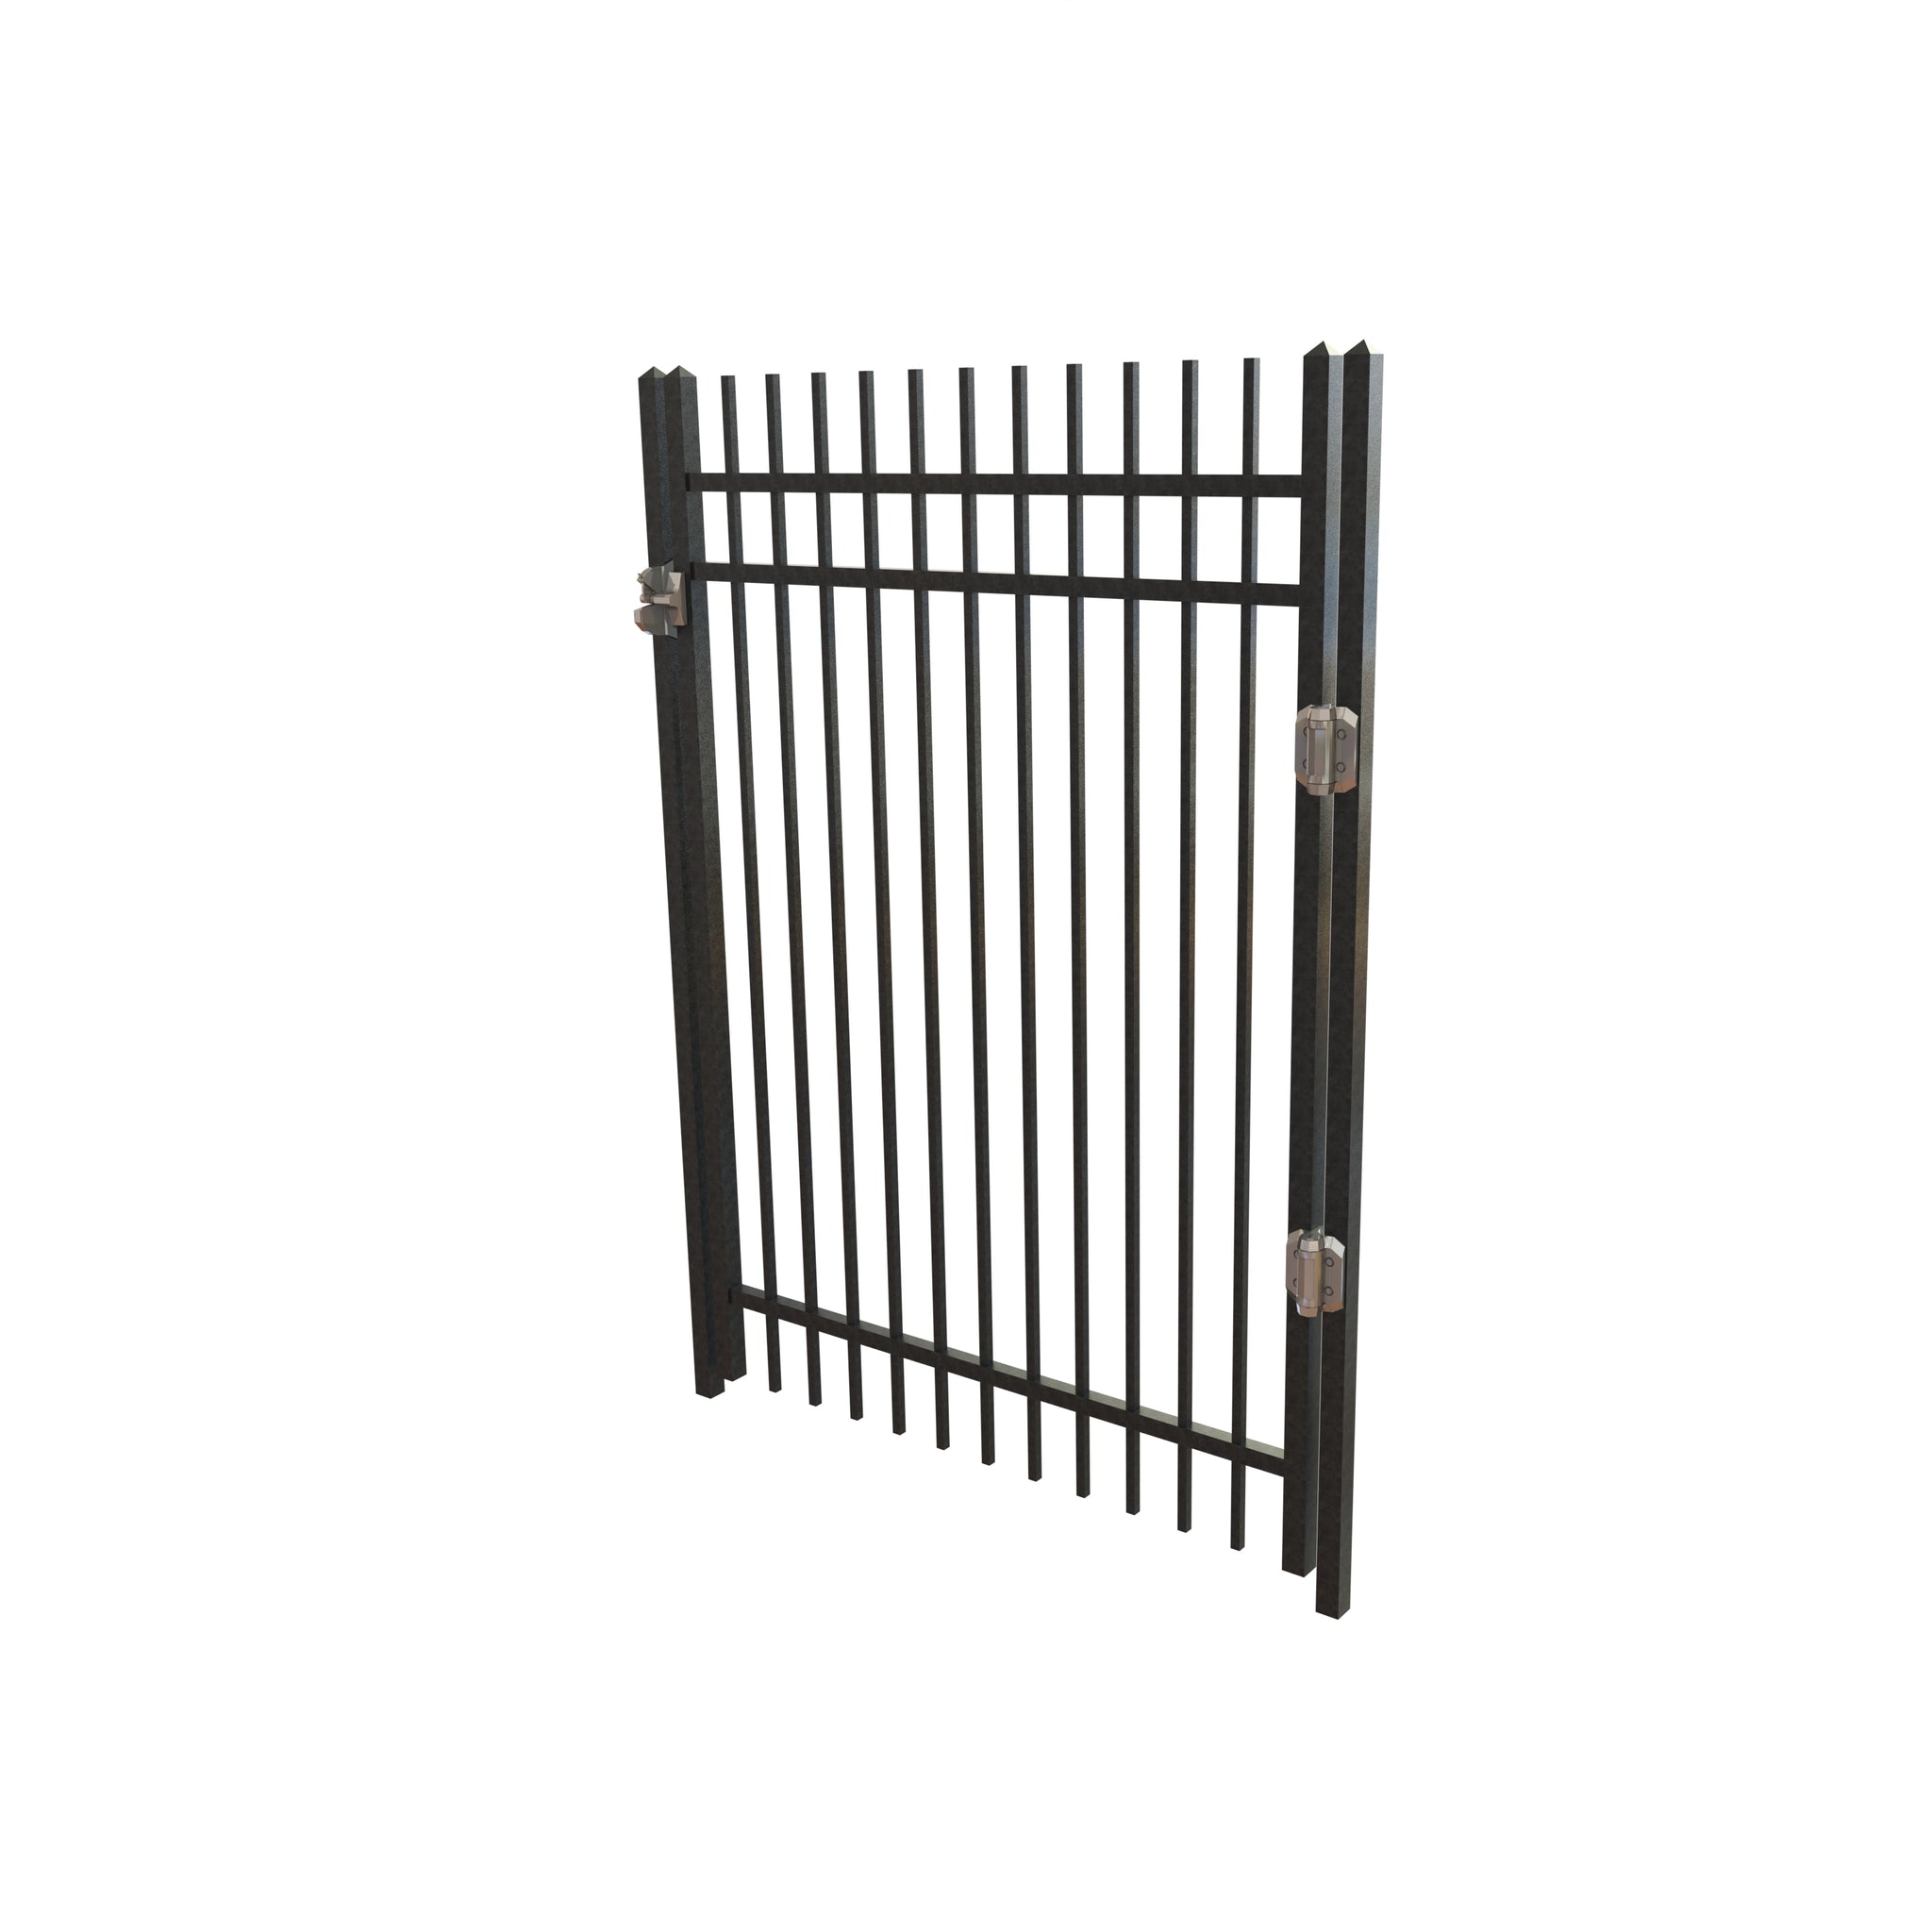 TruView Ornamental - Steel Fence Gate Kits - Summit